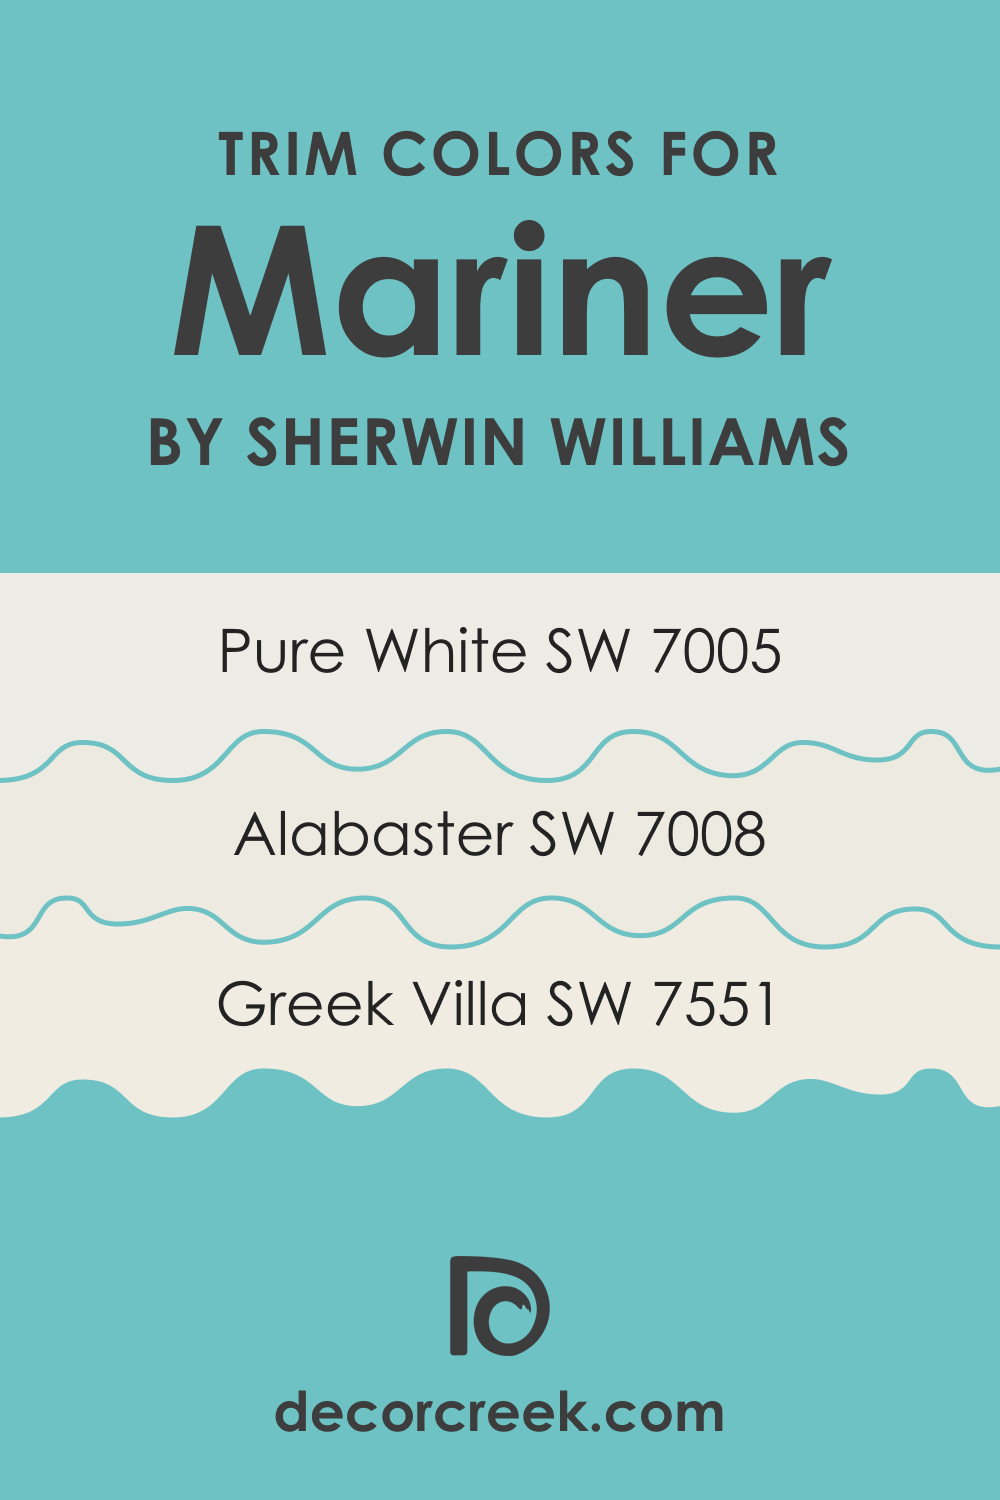 Trim Colors of SW 6766 Mariner